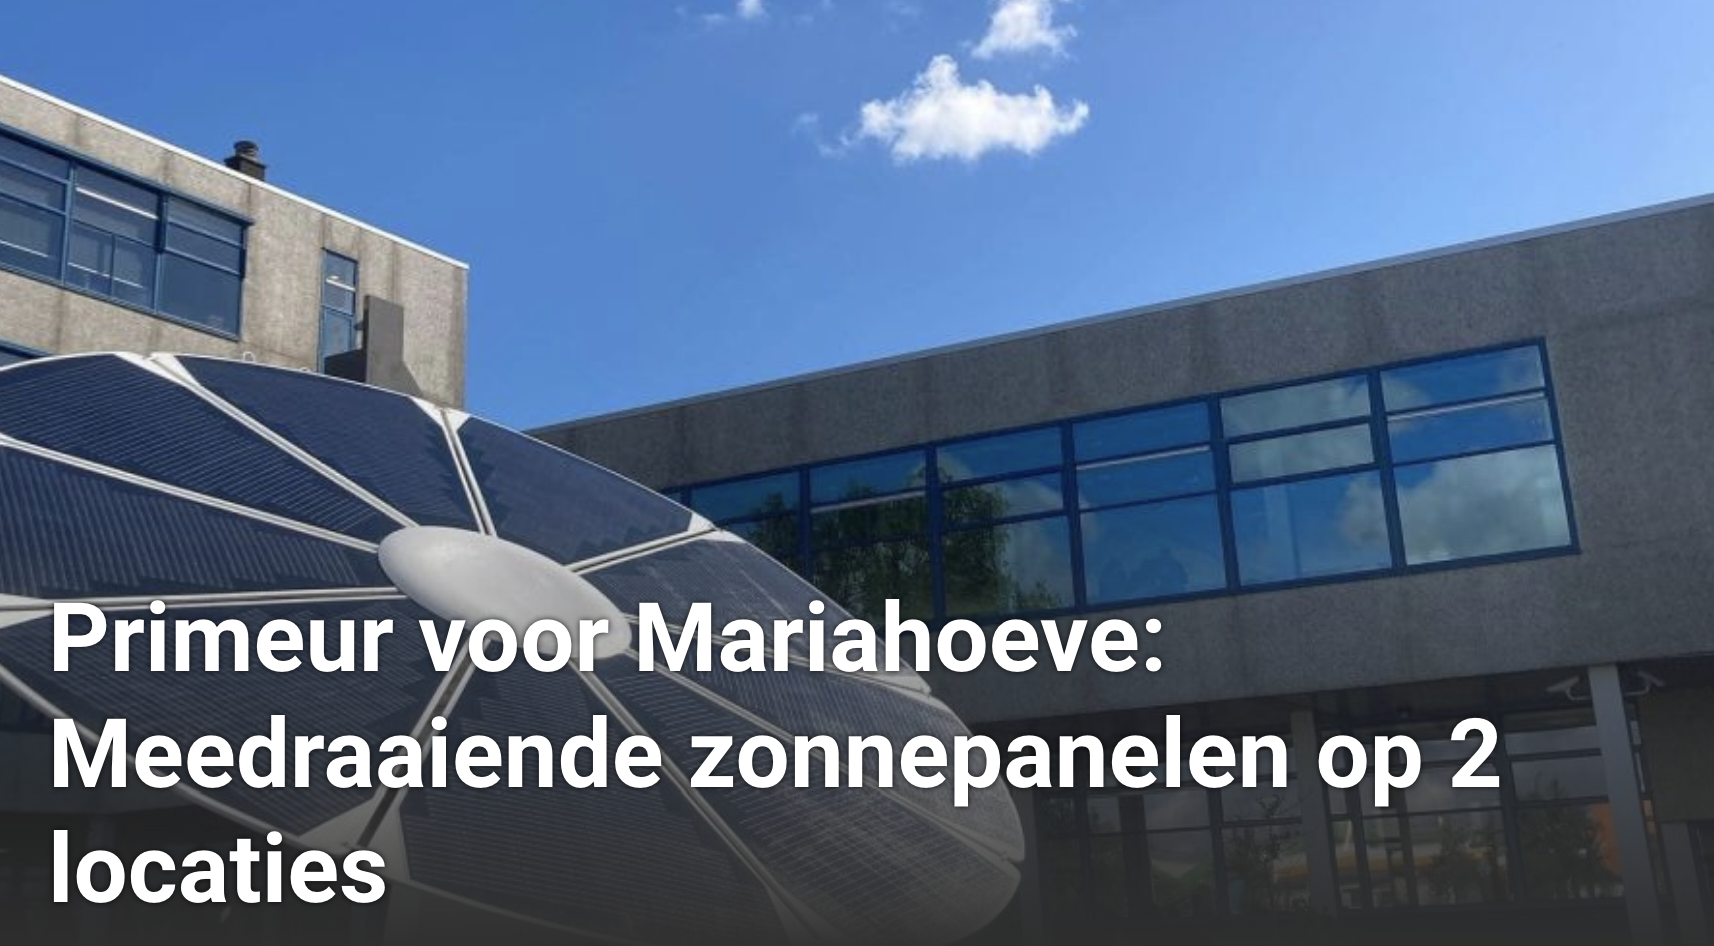 Primeur voor Mariahoeve: Meedraaiende zonnepanelen op 2 locaties